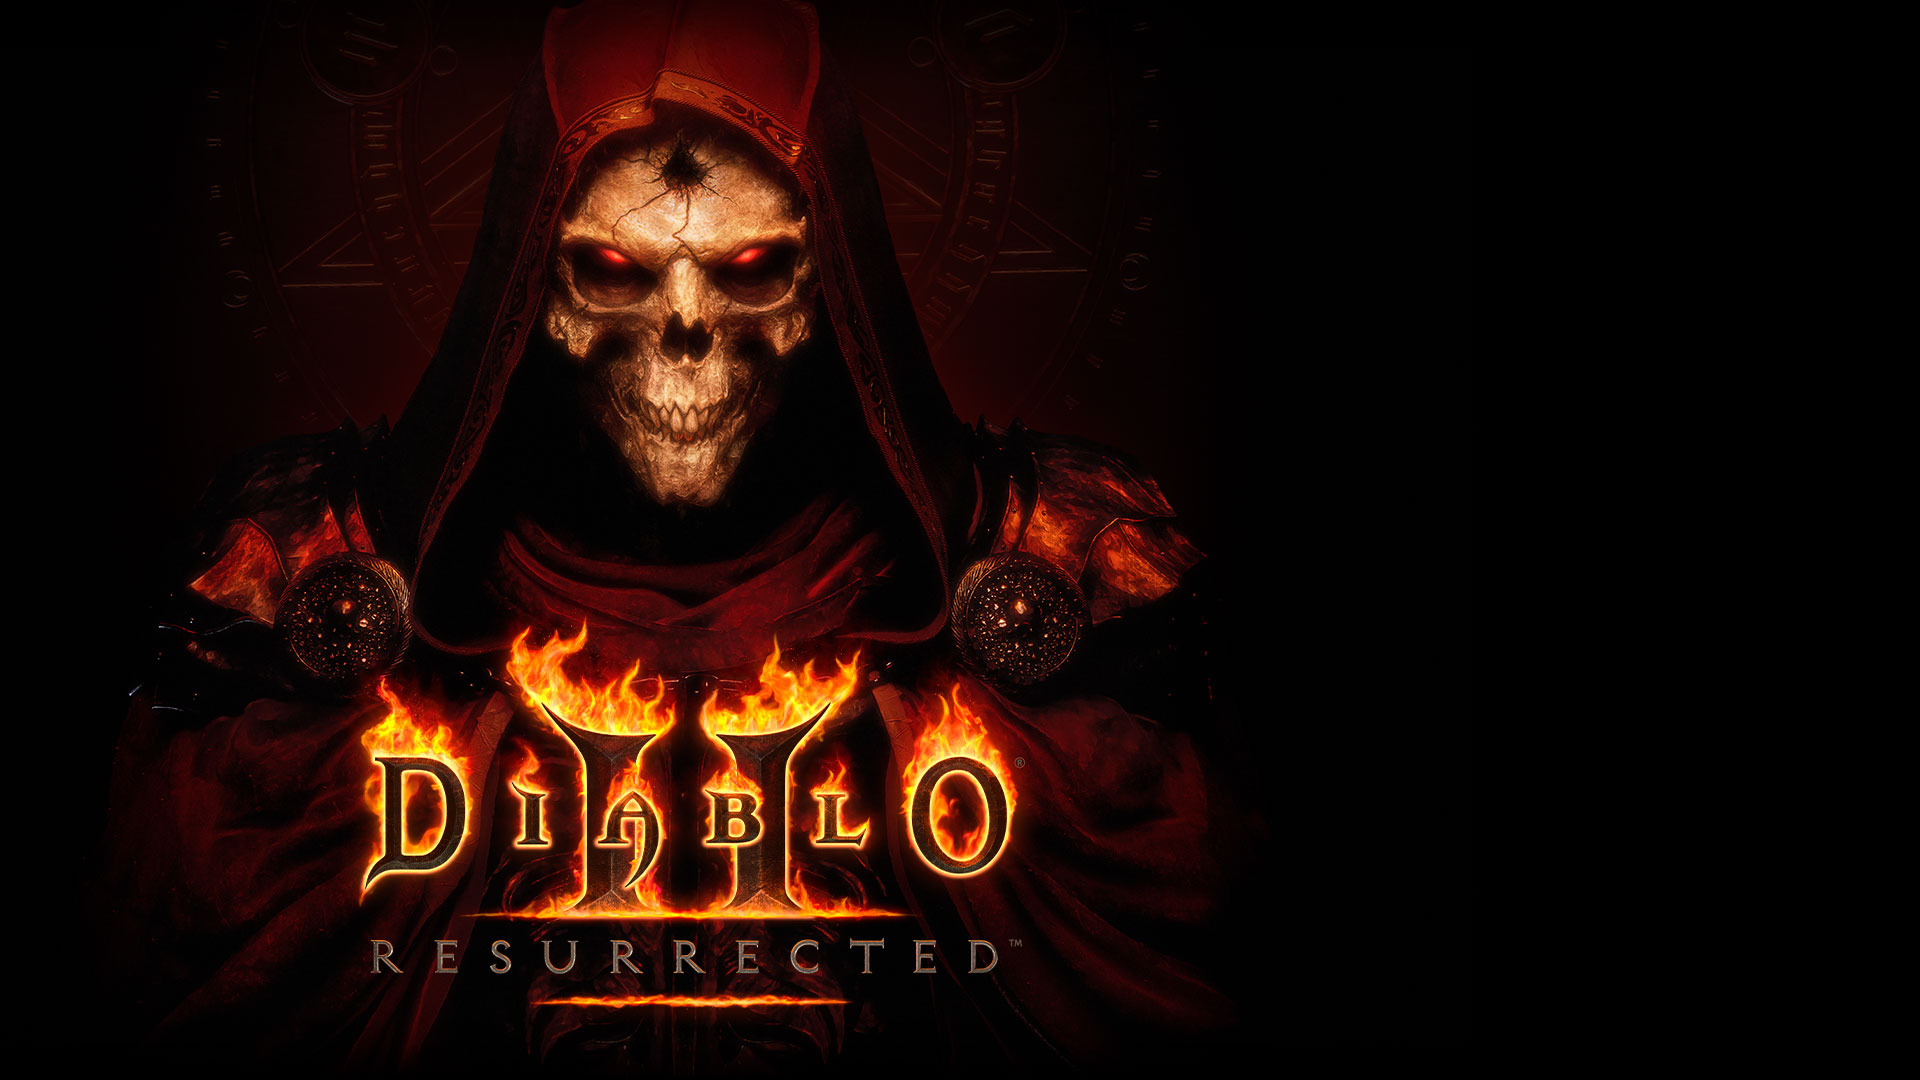 濃い赤色のマントと目が赤く光る骸骨の上に重なった「Diablo II: Resurrected」のロゴ。